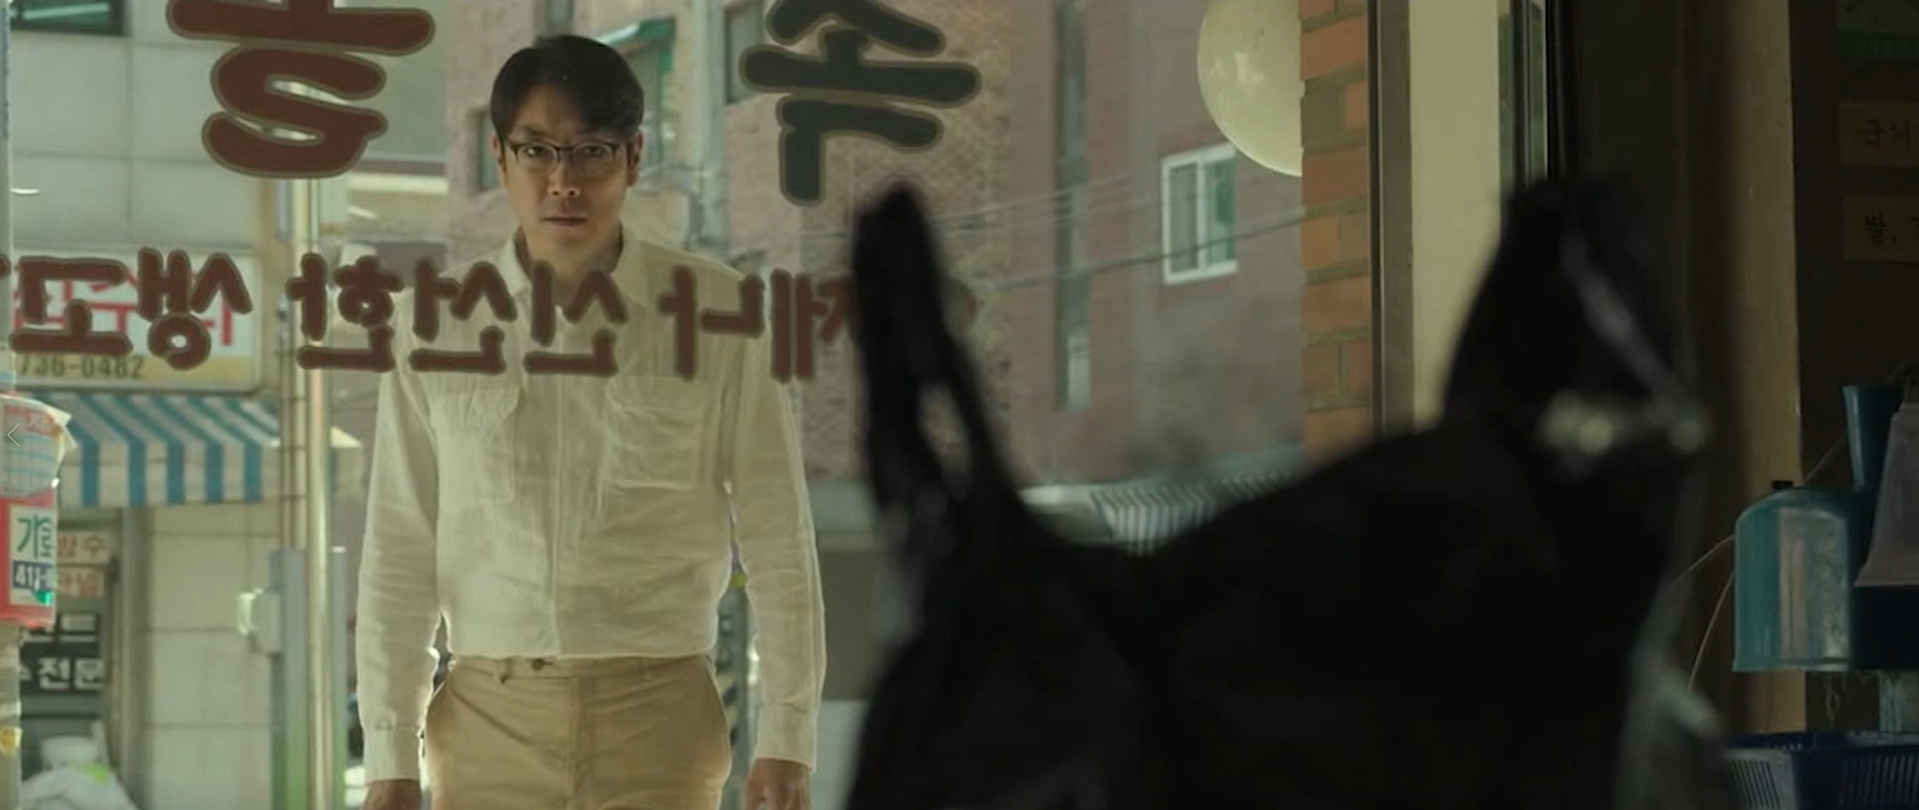 几分钟看完韩国恐怖电影《解冻》，胆小勿入不建议看第二遍